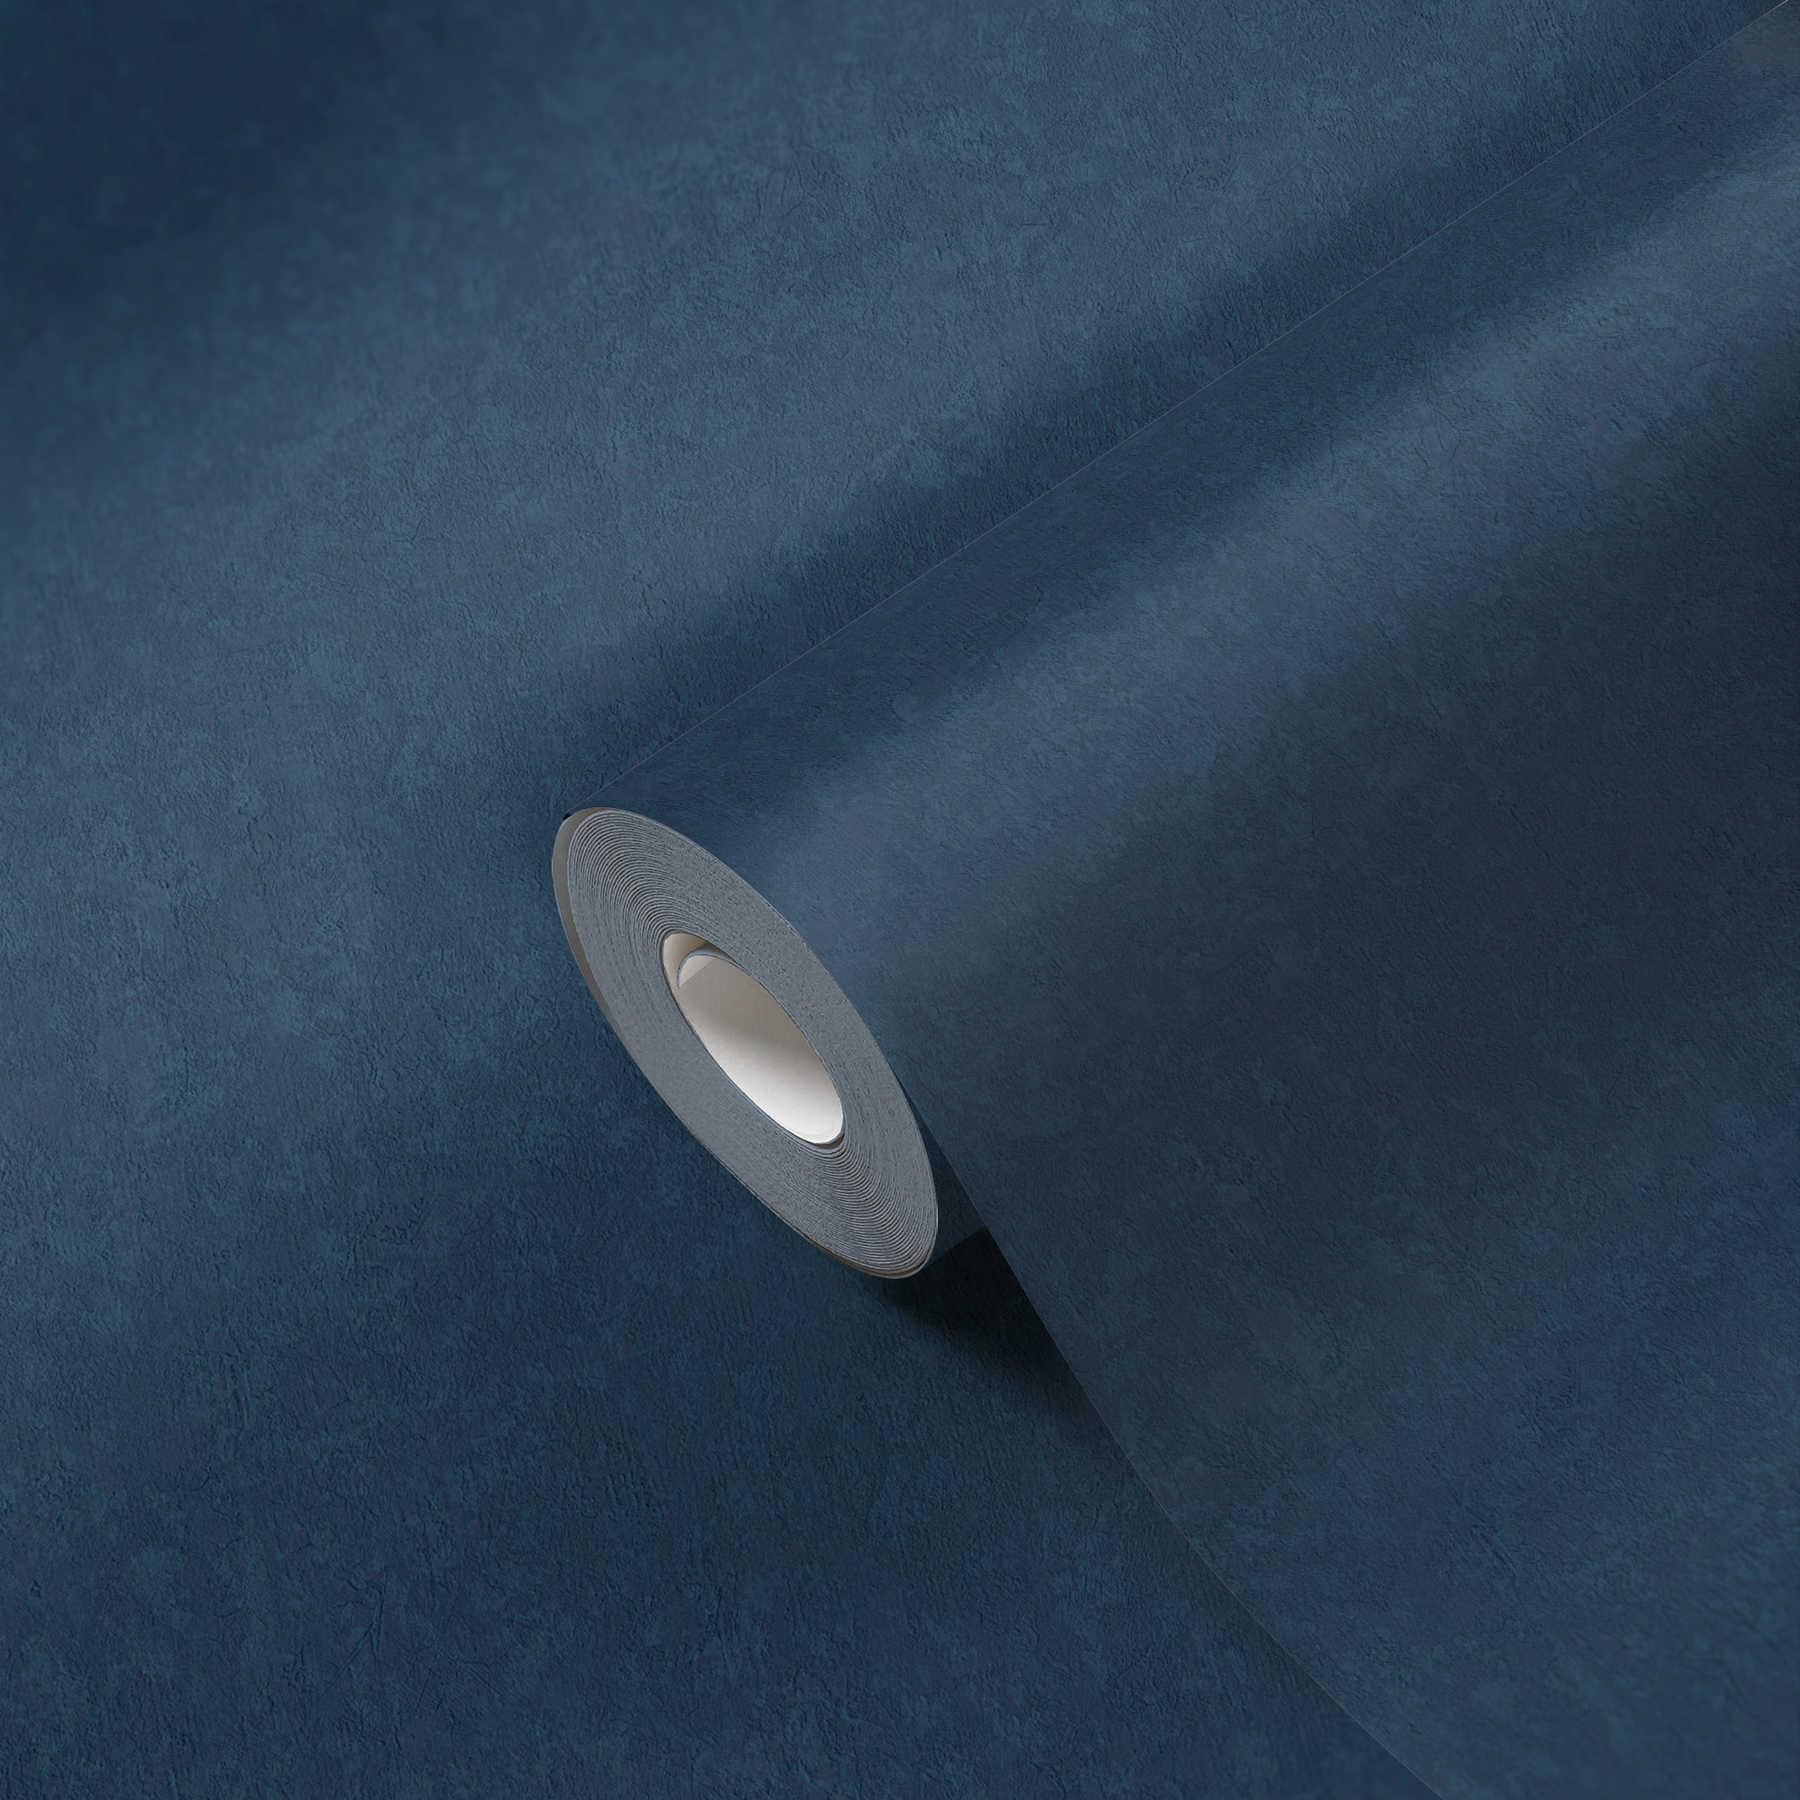             Effen vliesbehang in topkwaliteit - blauw
        